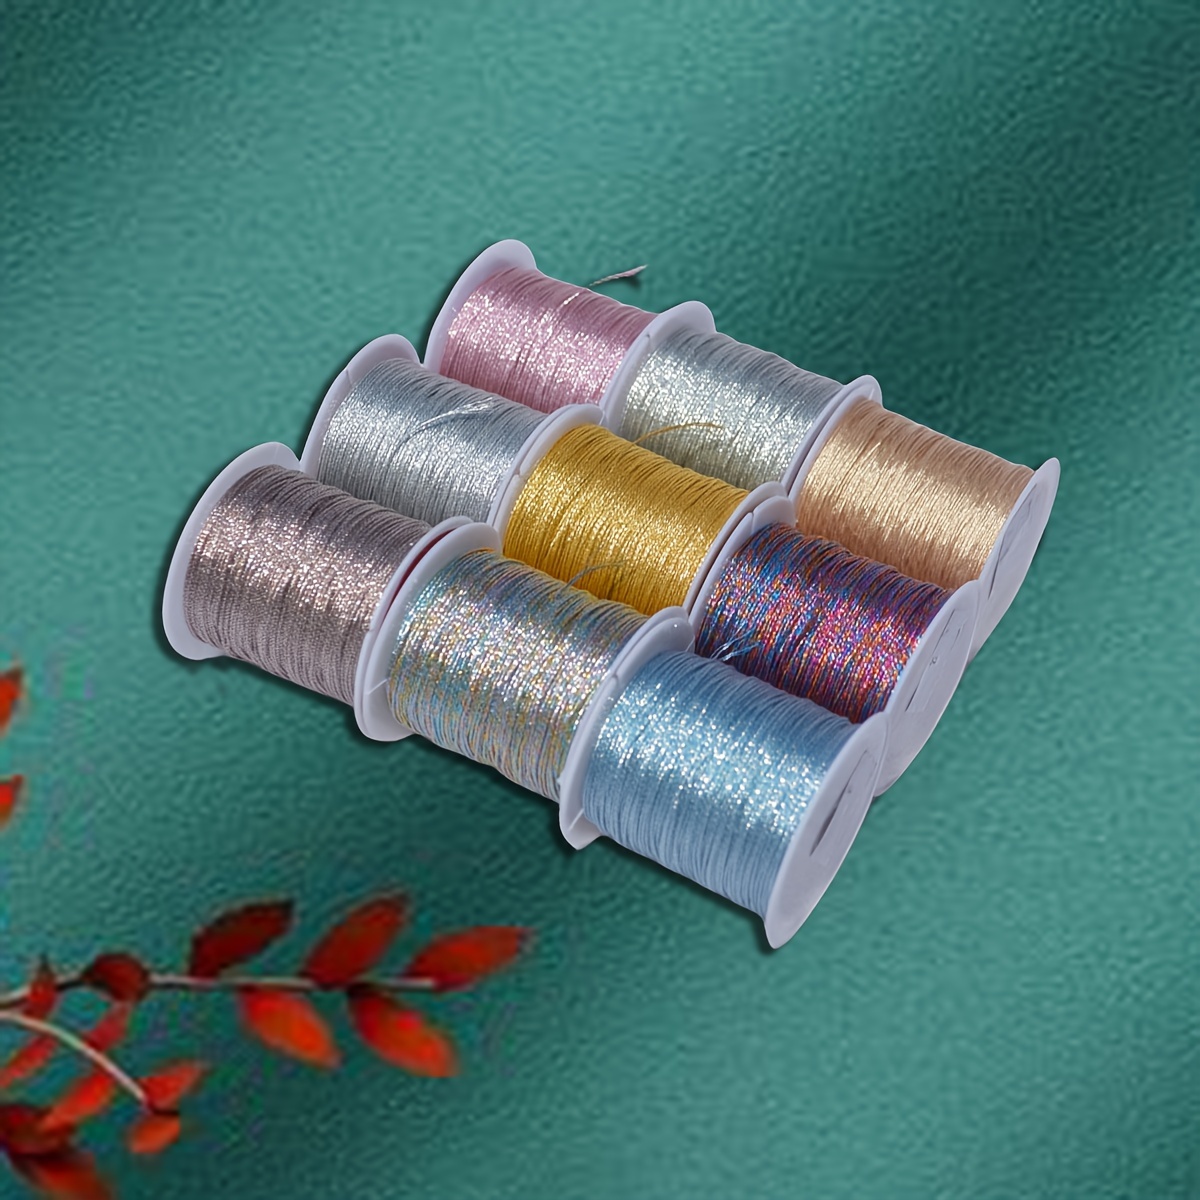 1roll Elastane Yarn, Minimalist Clear Thread For Crafts